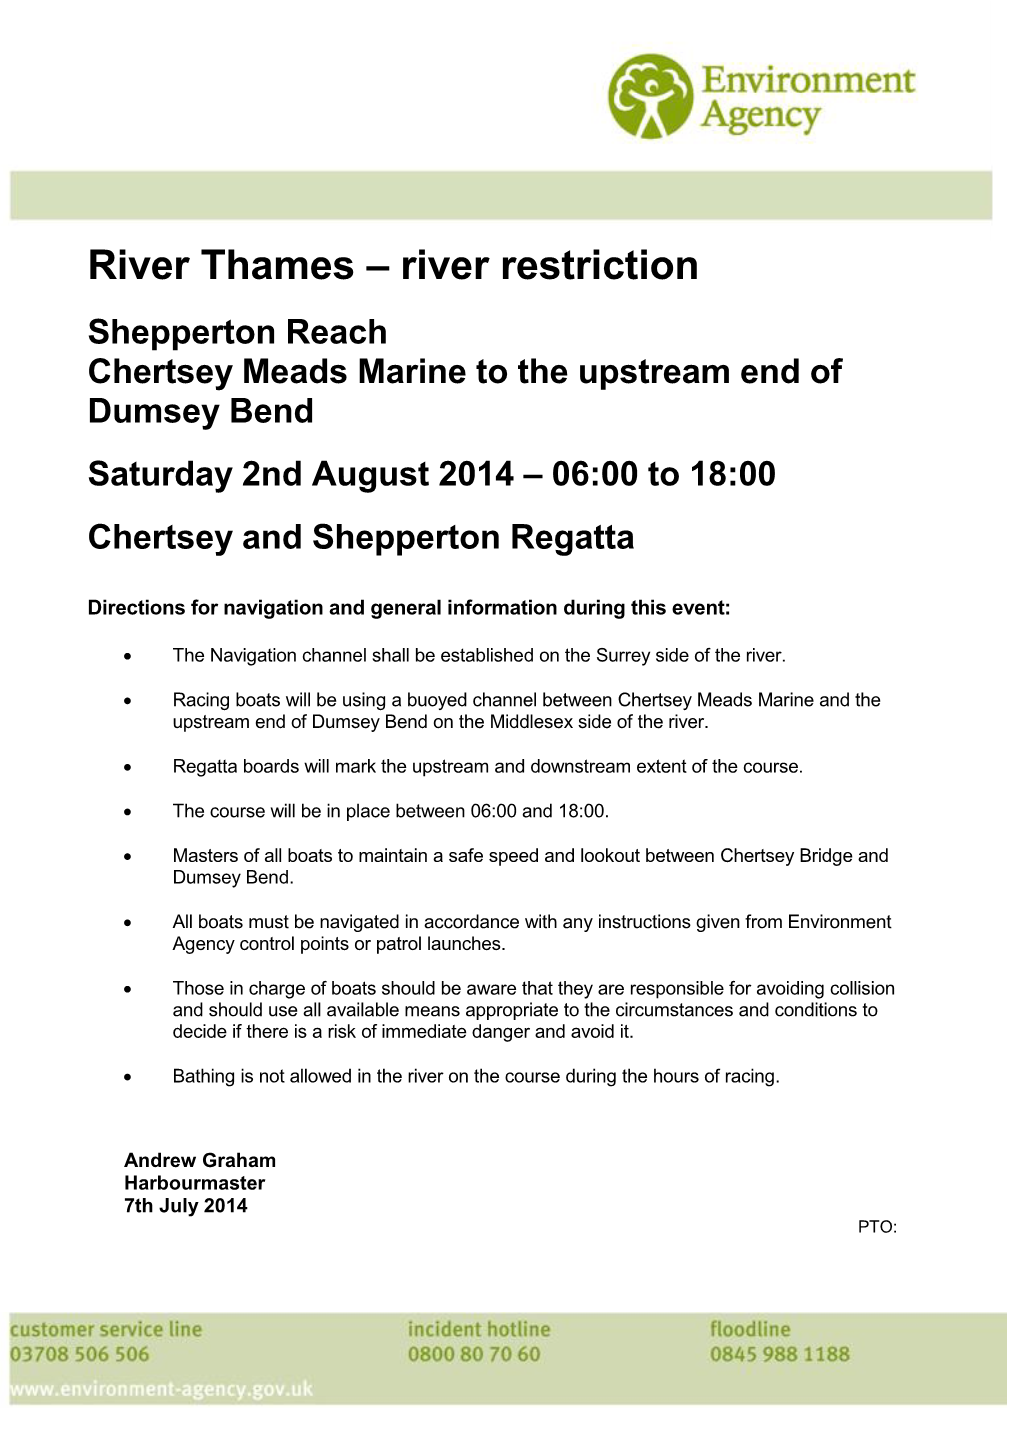 River Thames – River Restriction